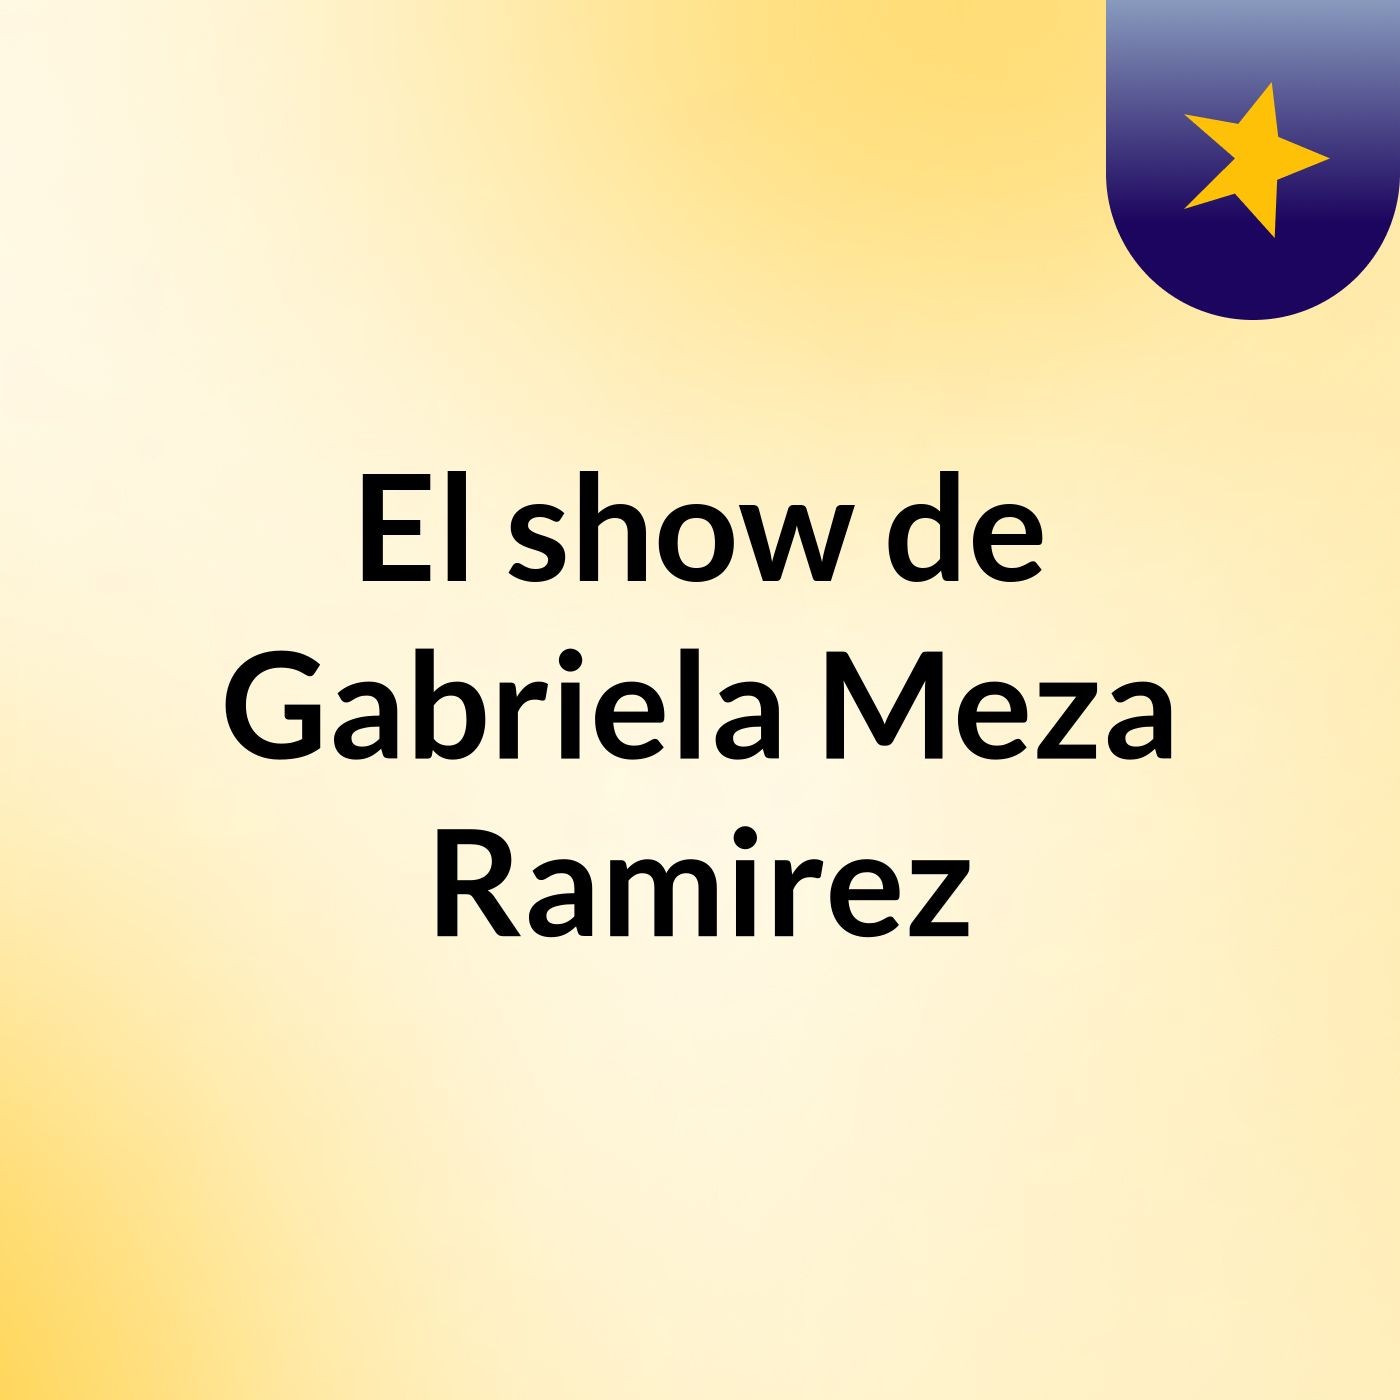 El show de Gabriela Meza Ramirez